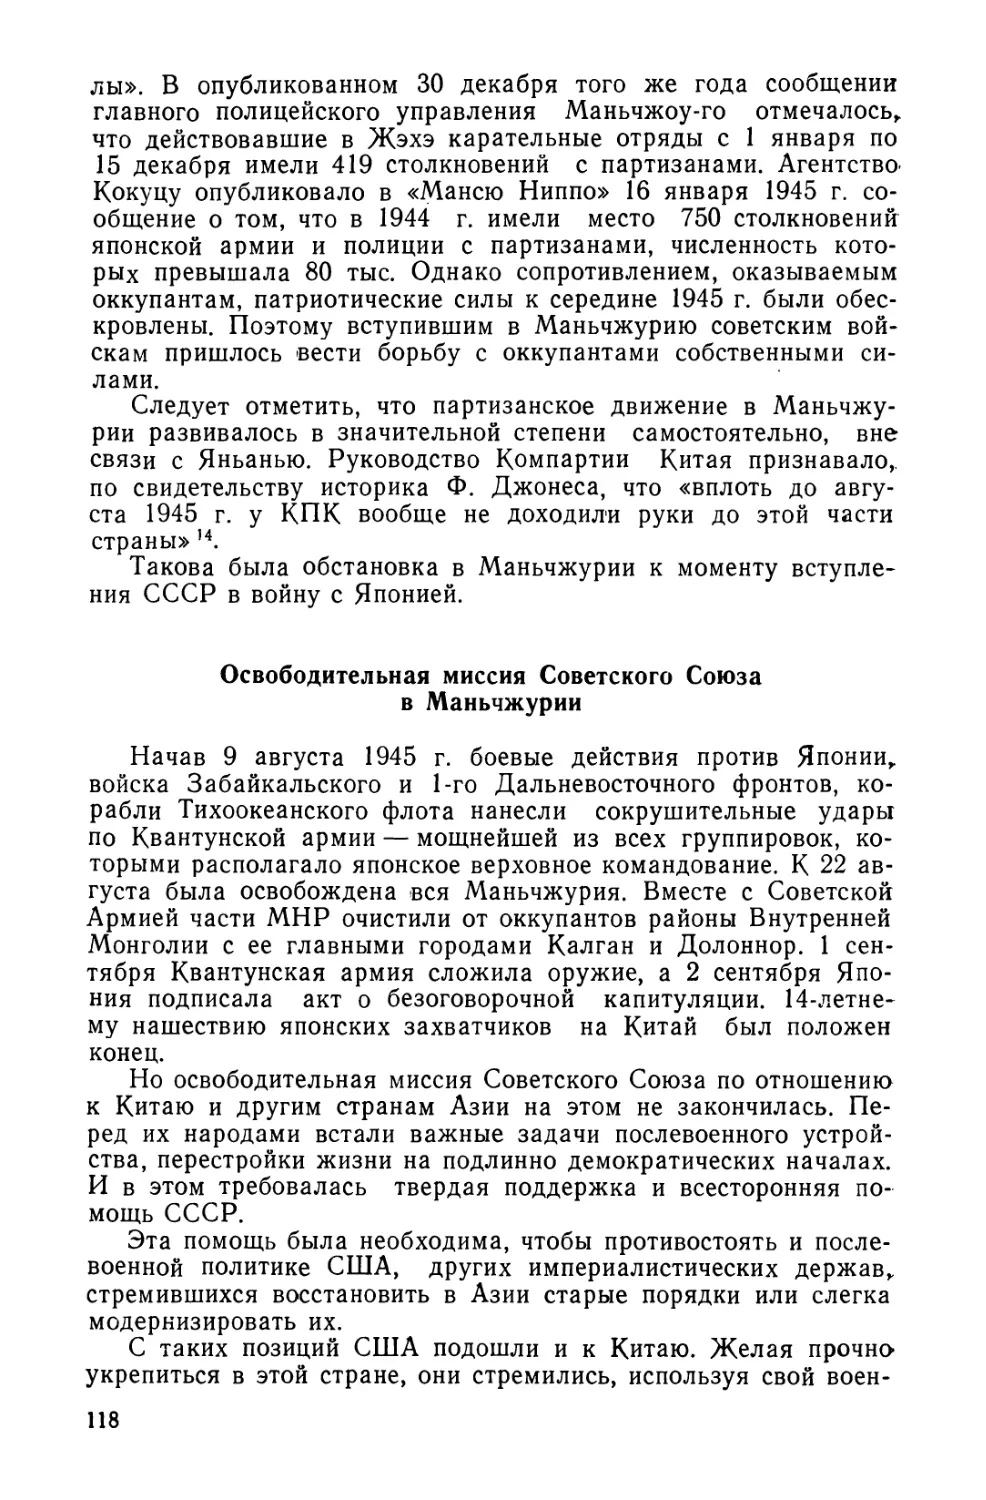 Освободительная миссия Советского Союза в Маньчжурии